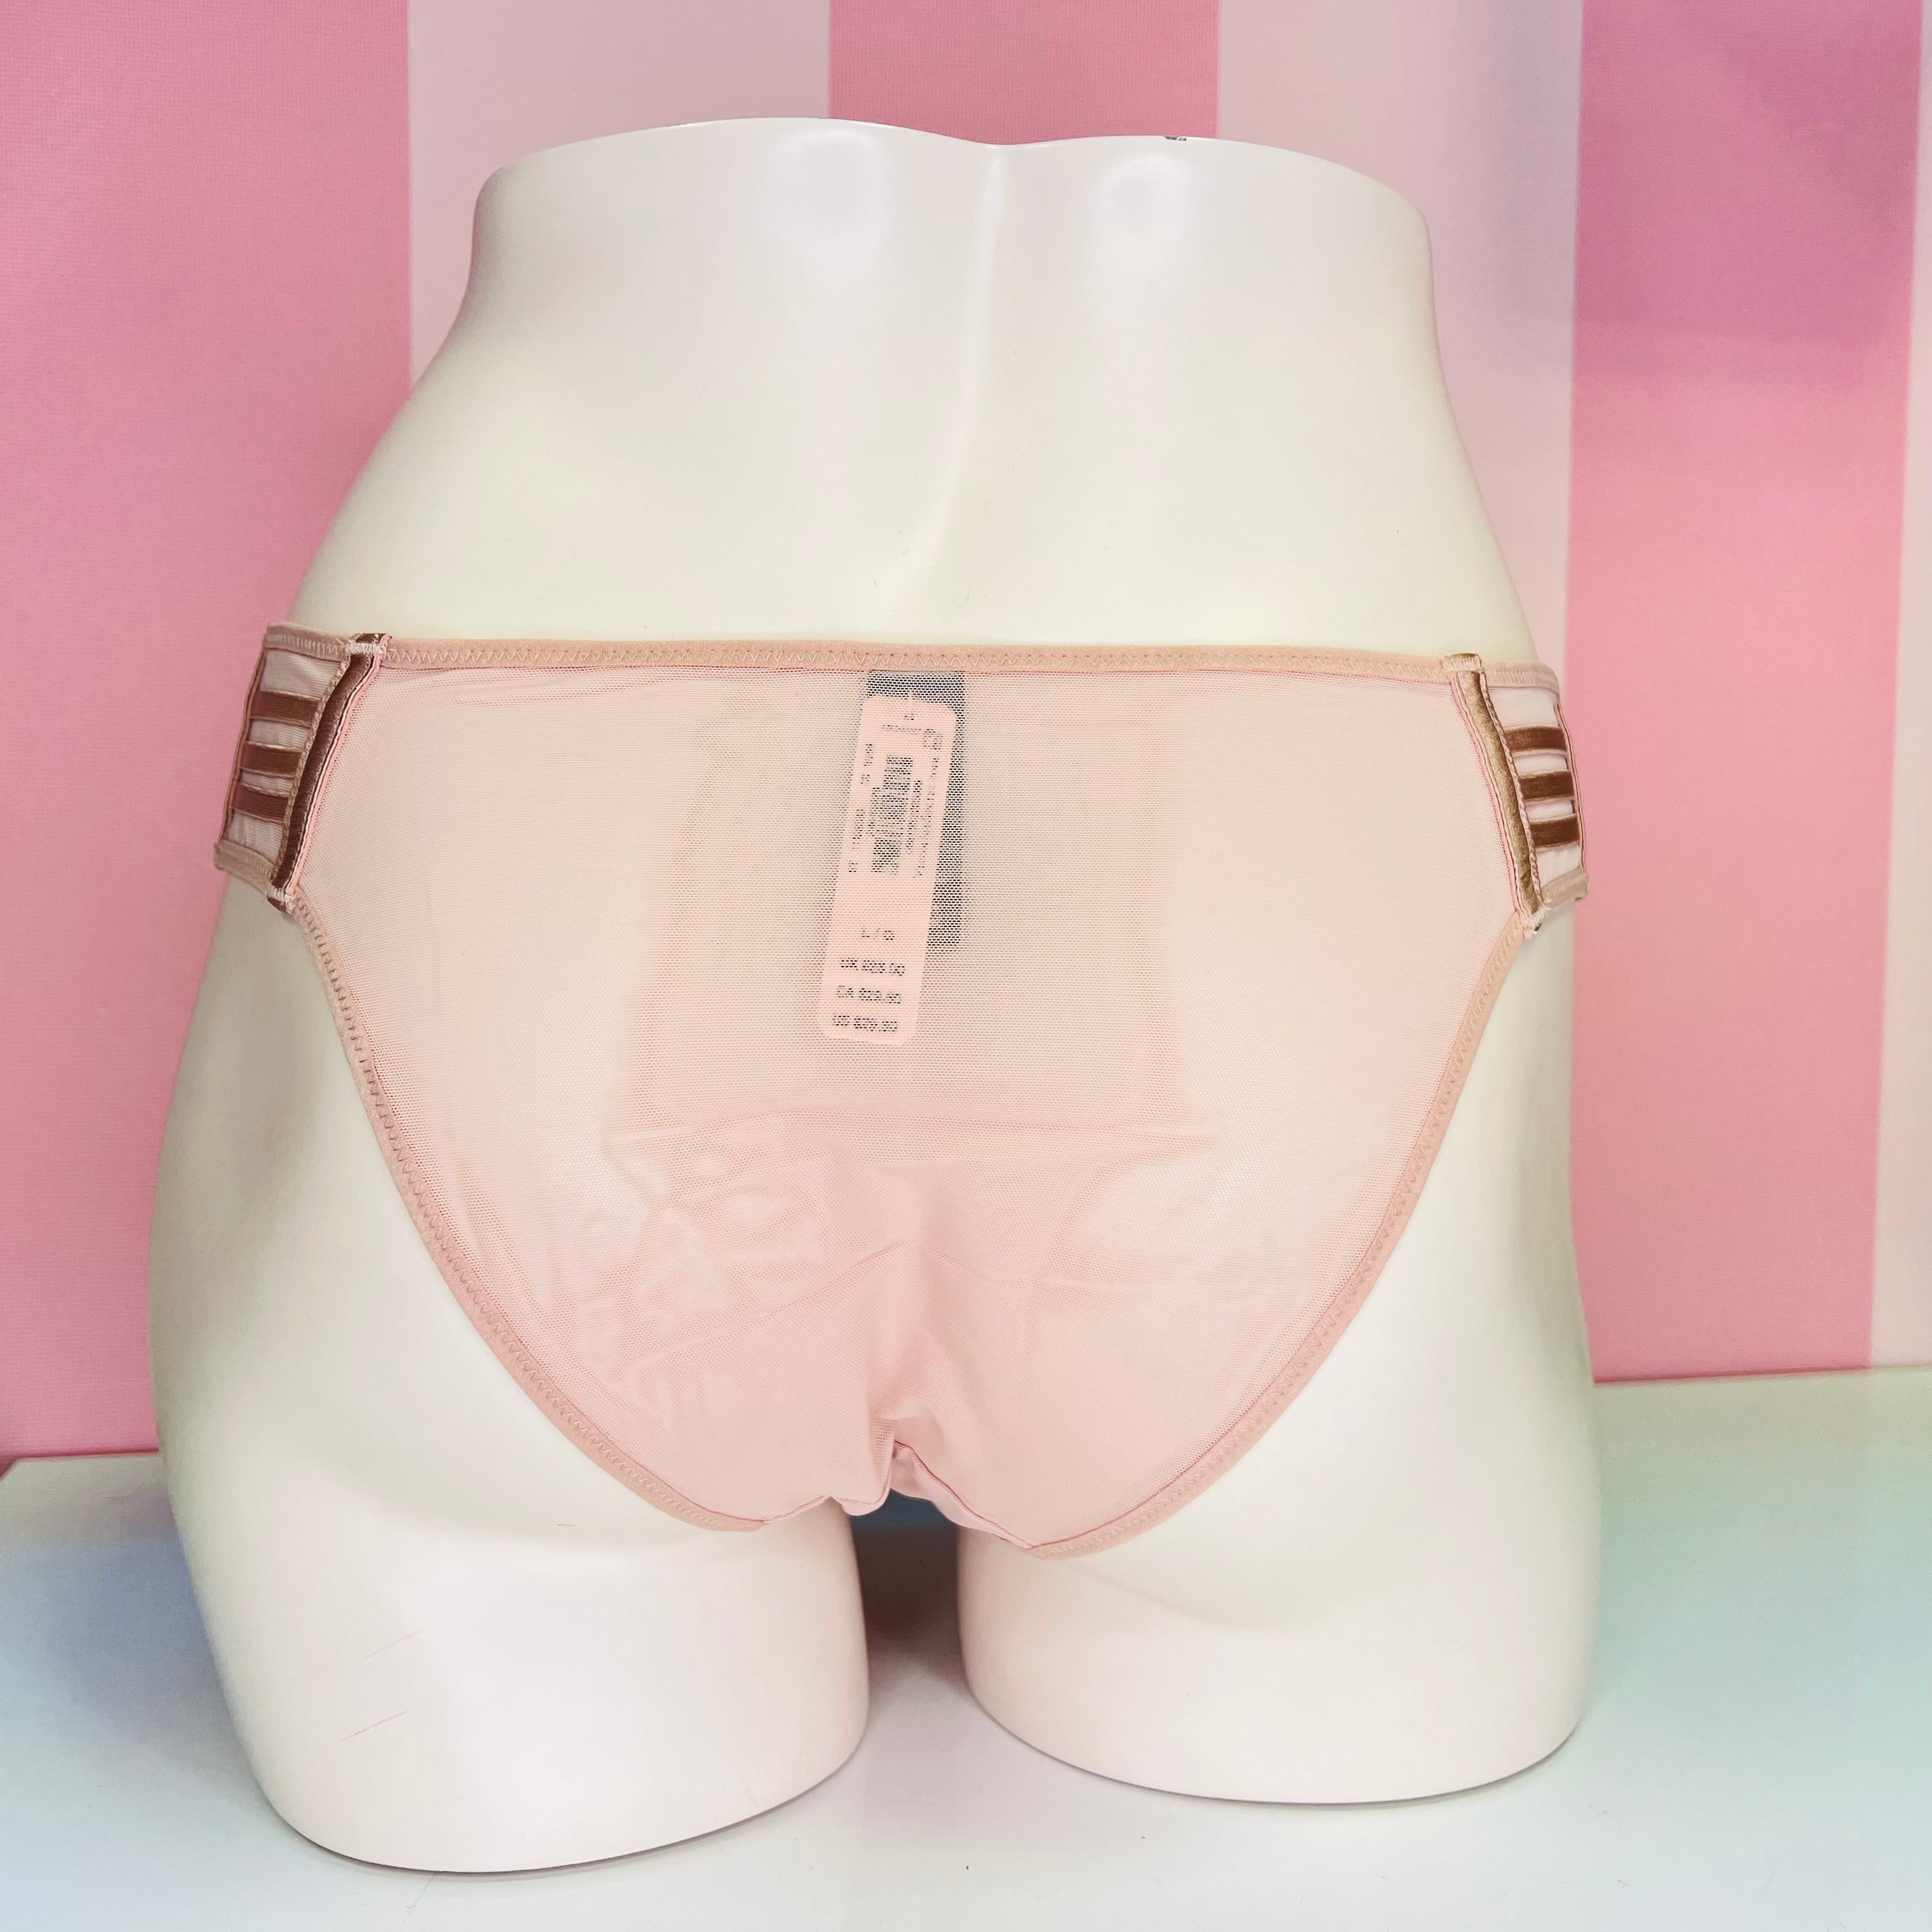 Síťované kalhotky - L / Růžová / Nové se štítky - Kalhotky Victoria’s Secret